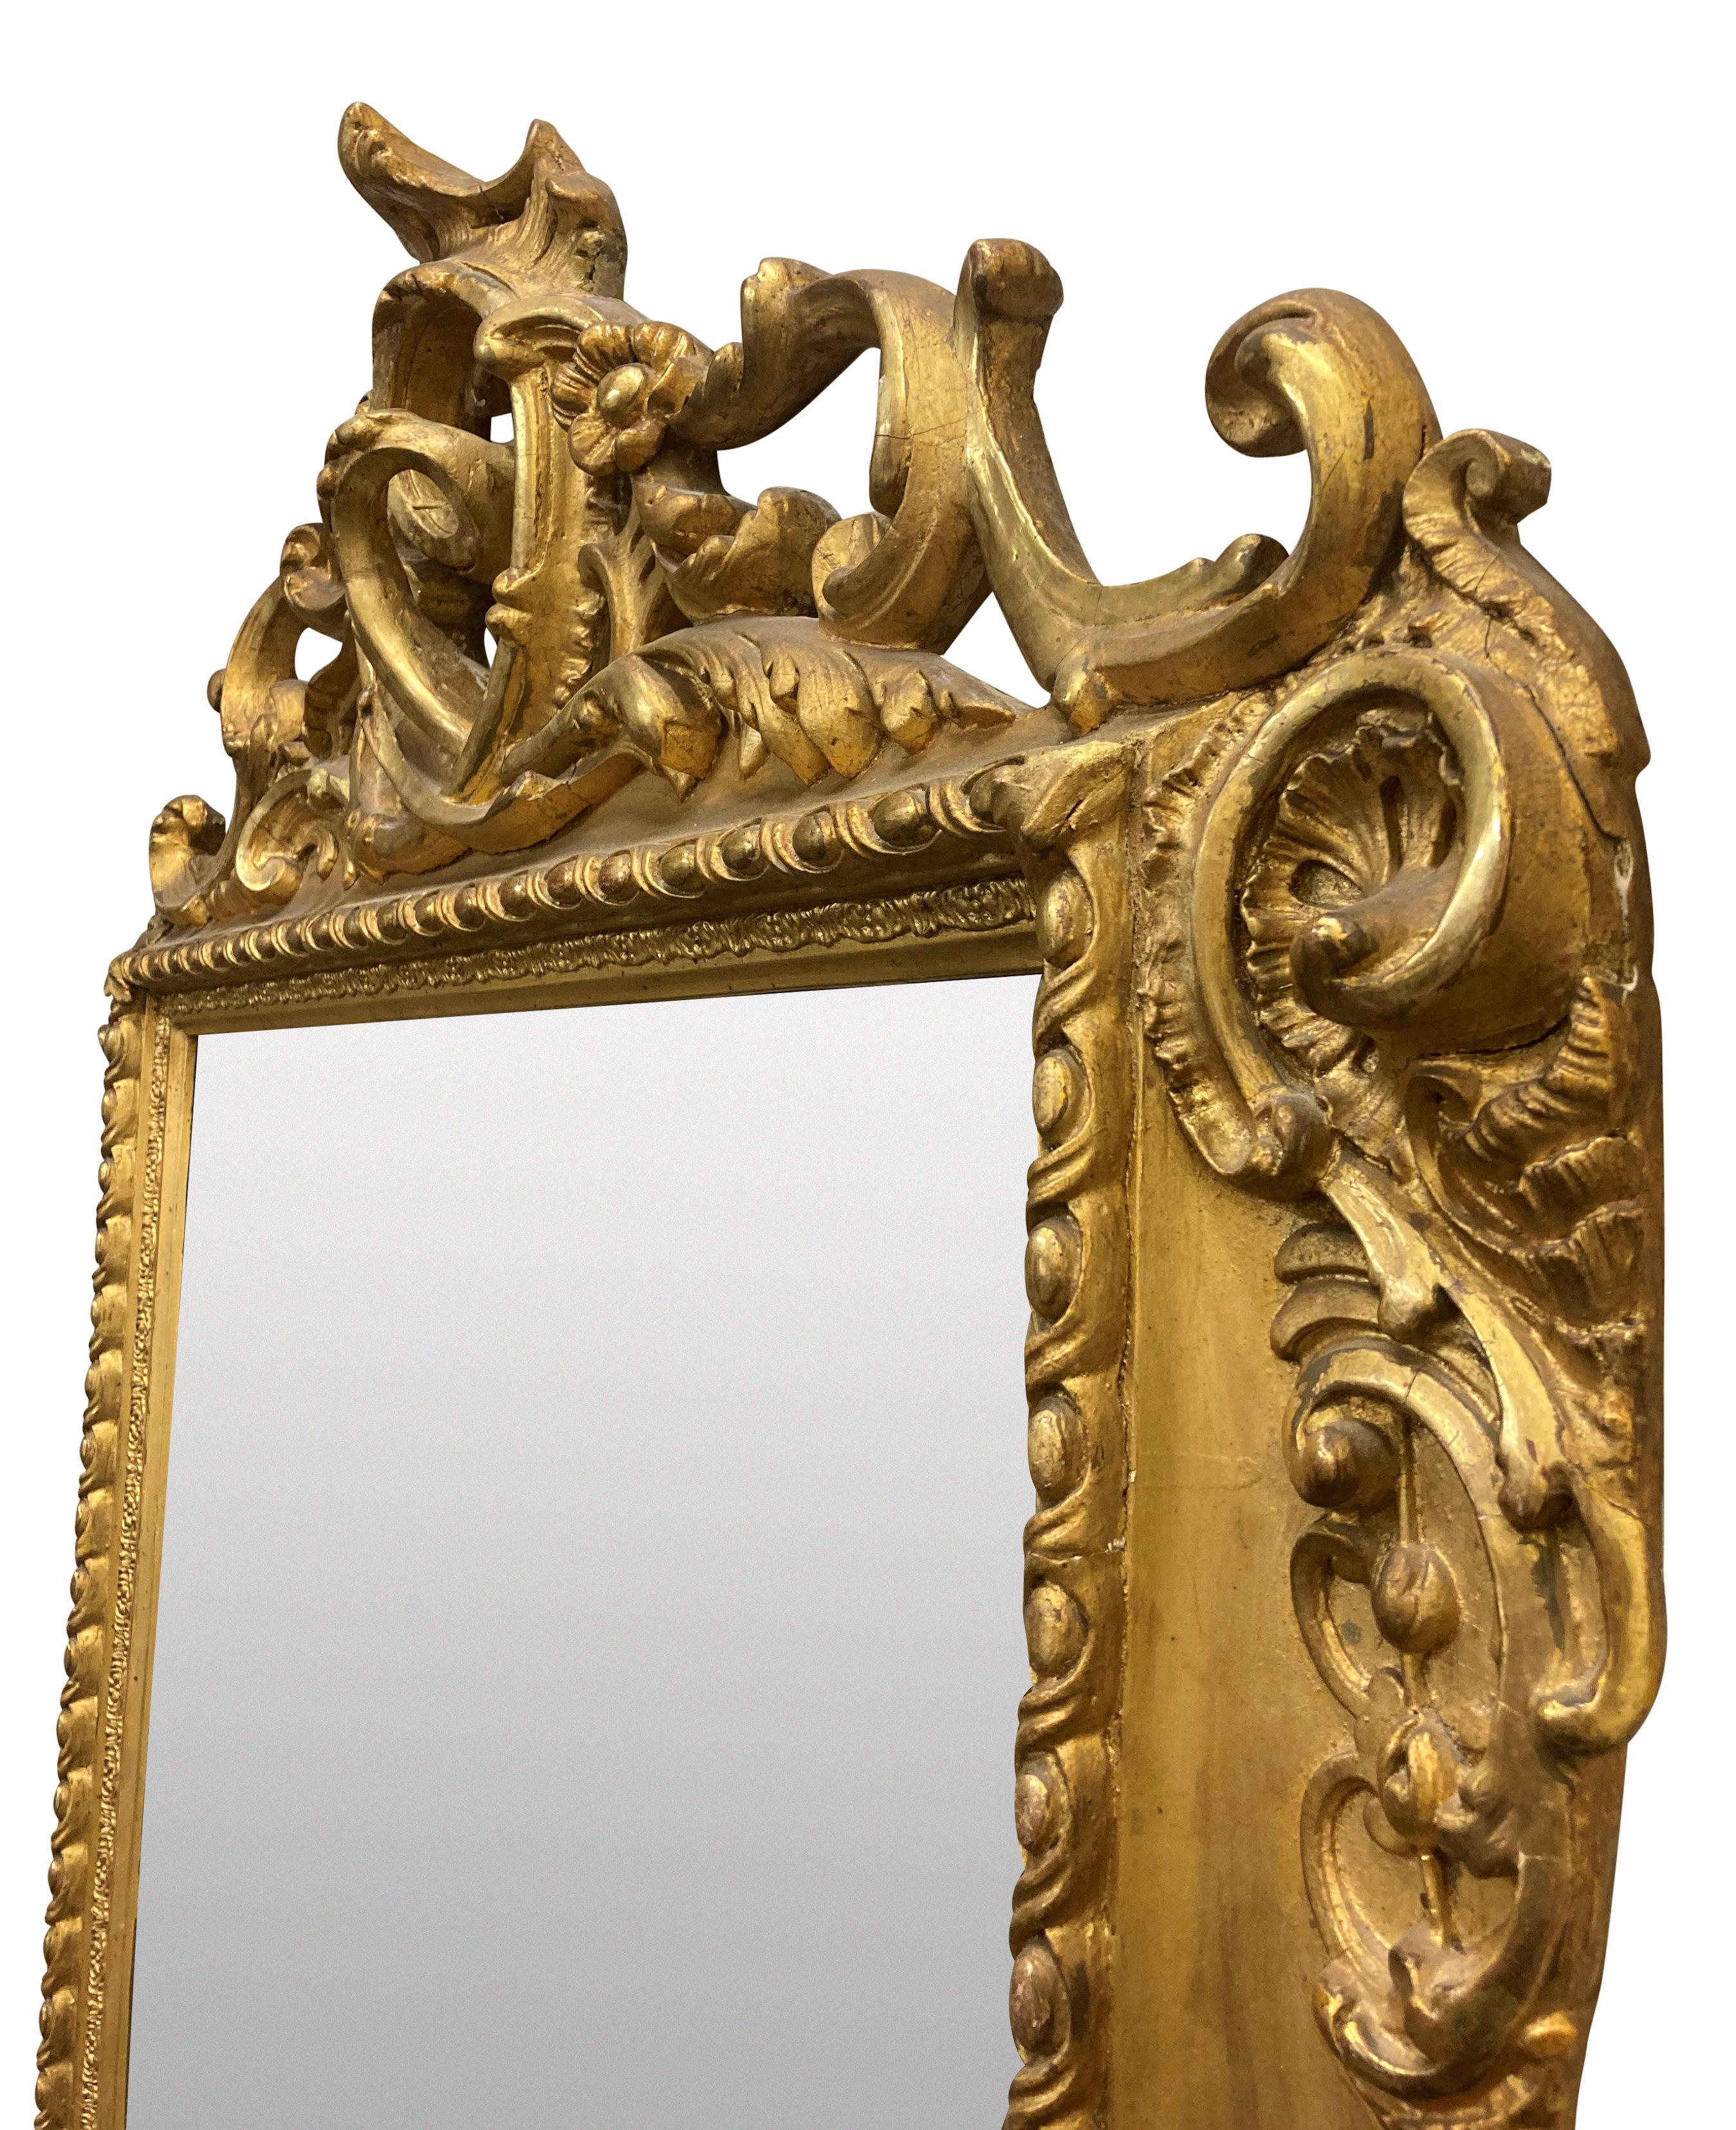 Ein deutscher geschnitzter vergoldeter Holzpfeilerspiegel aus dem XIX. Jahrhundert, en suite mit einem passenden Konsolentisch, der separat verkauft wird. Gestempelt 'Coburg'.